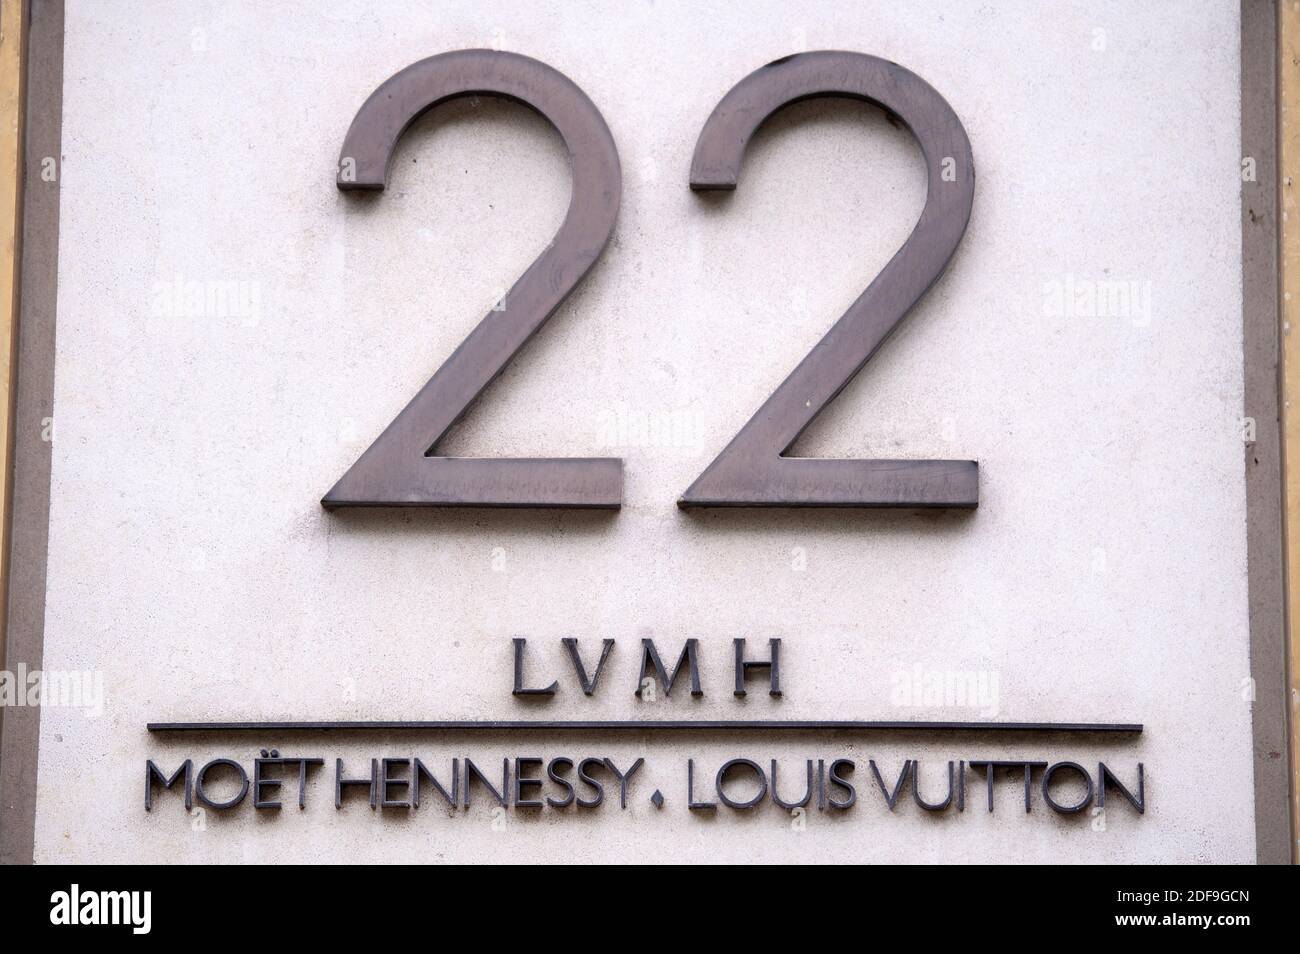 LVMH, 22 Avenue Montaigne, Martti Kuusanmäki